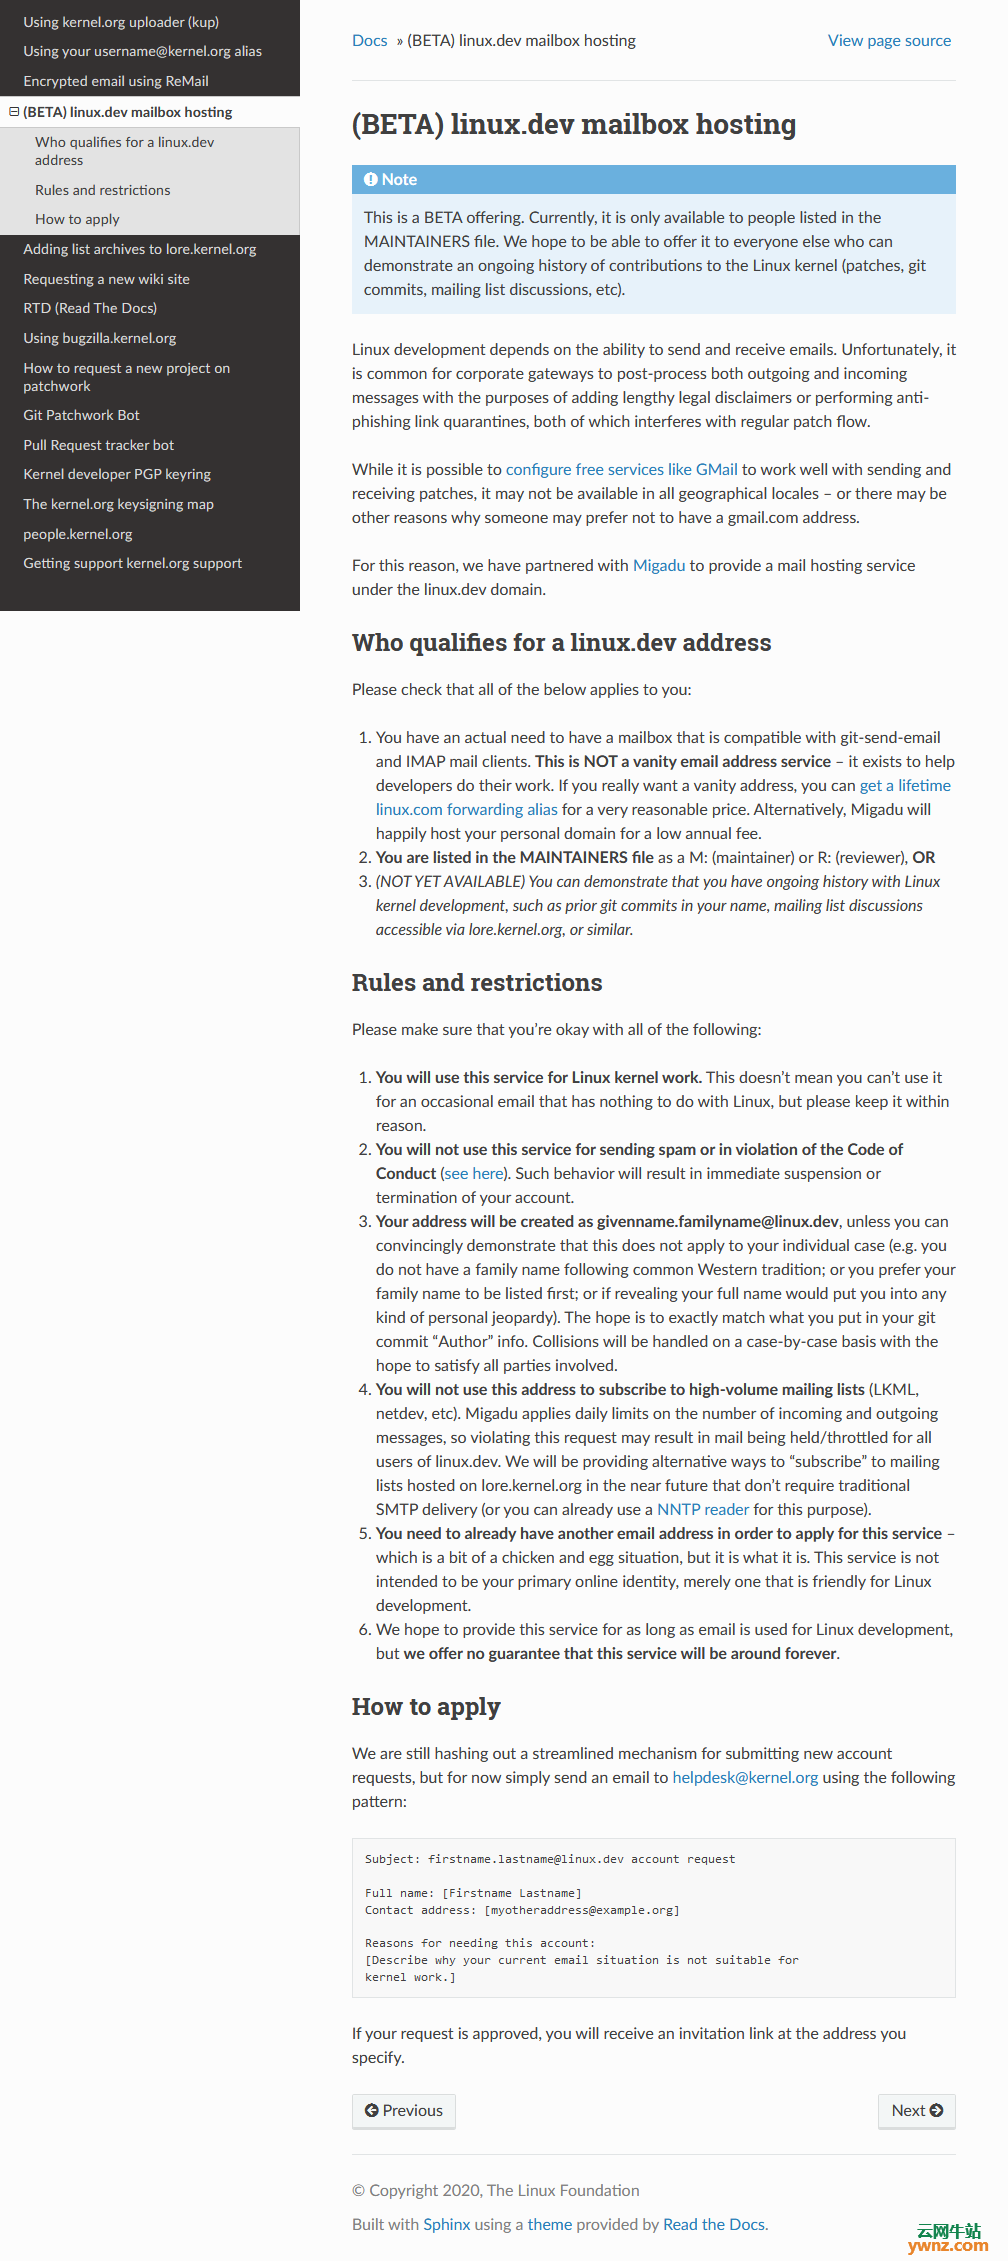 申请专用邮箱@linux.dev的资格、规则和限制及申请方法